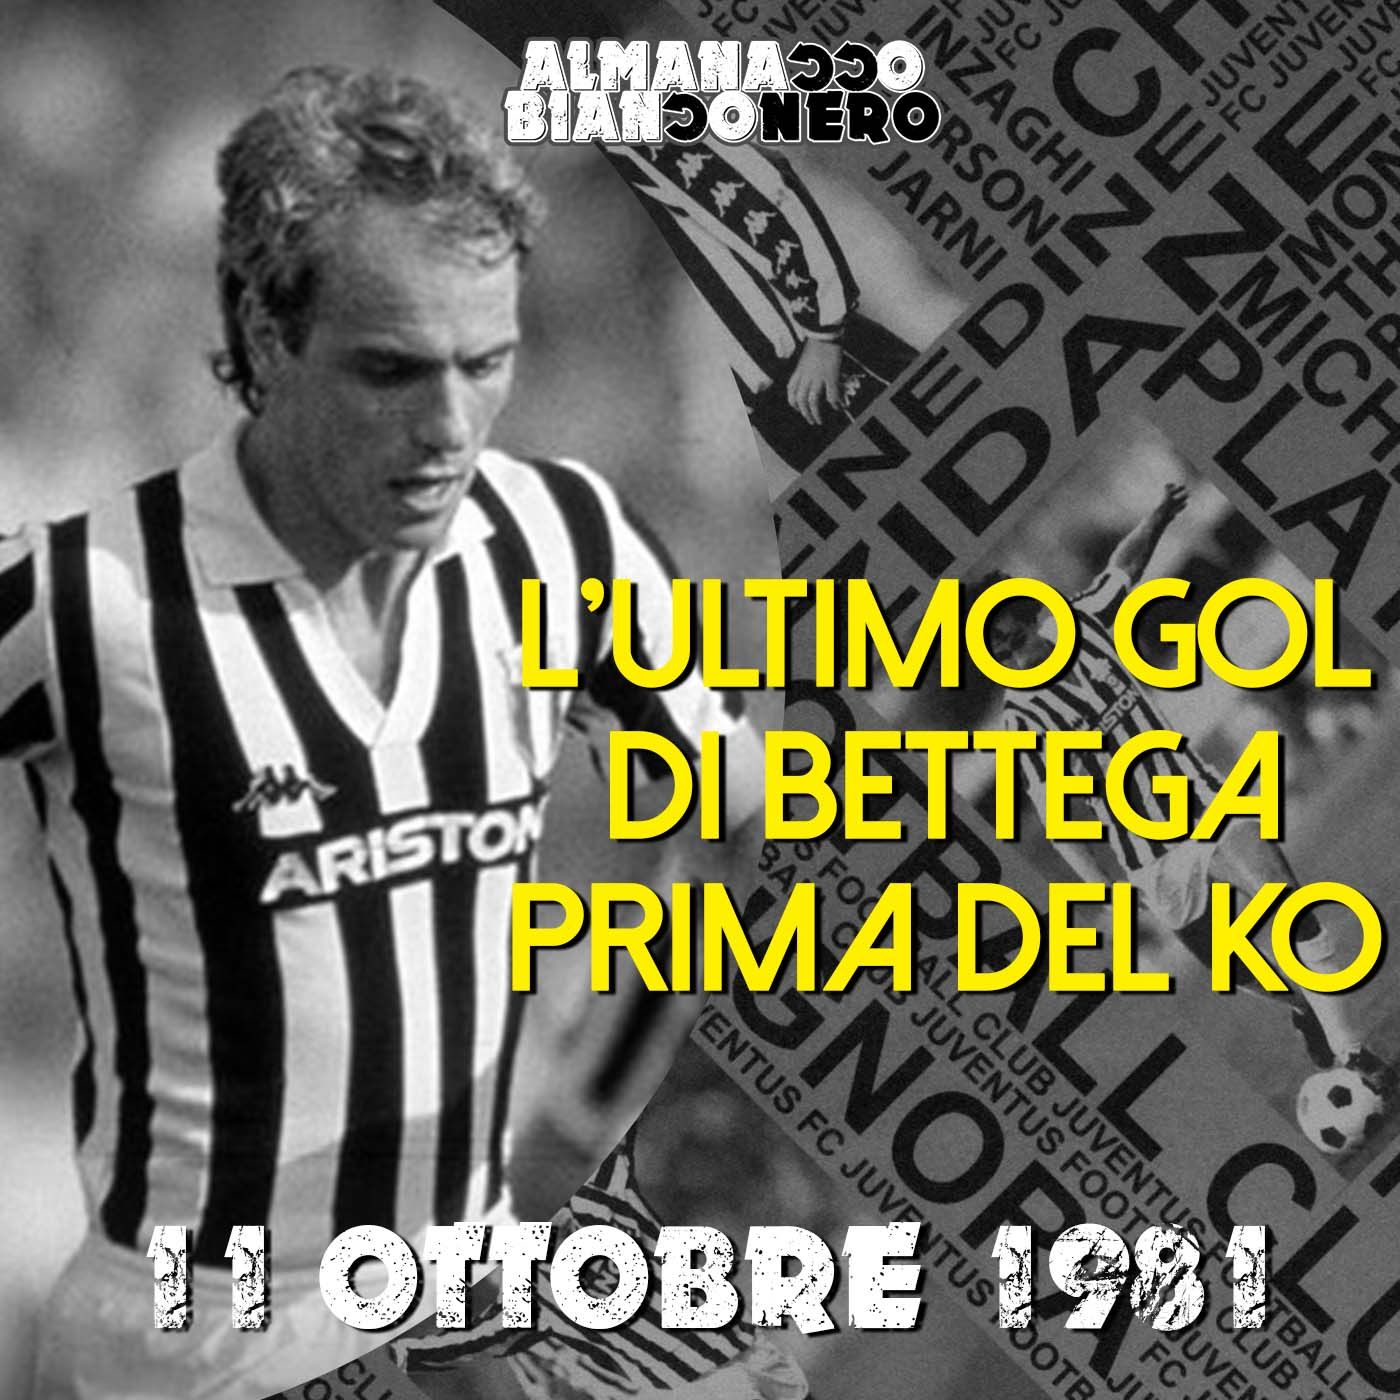 11 ottobre 1981 - L'ultimo gol di Bettega prima del ko